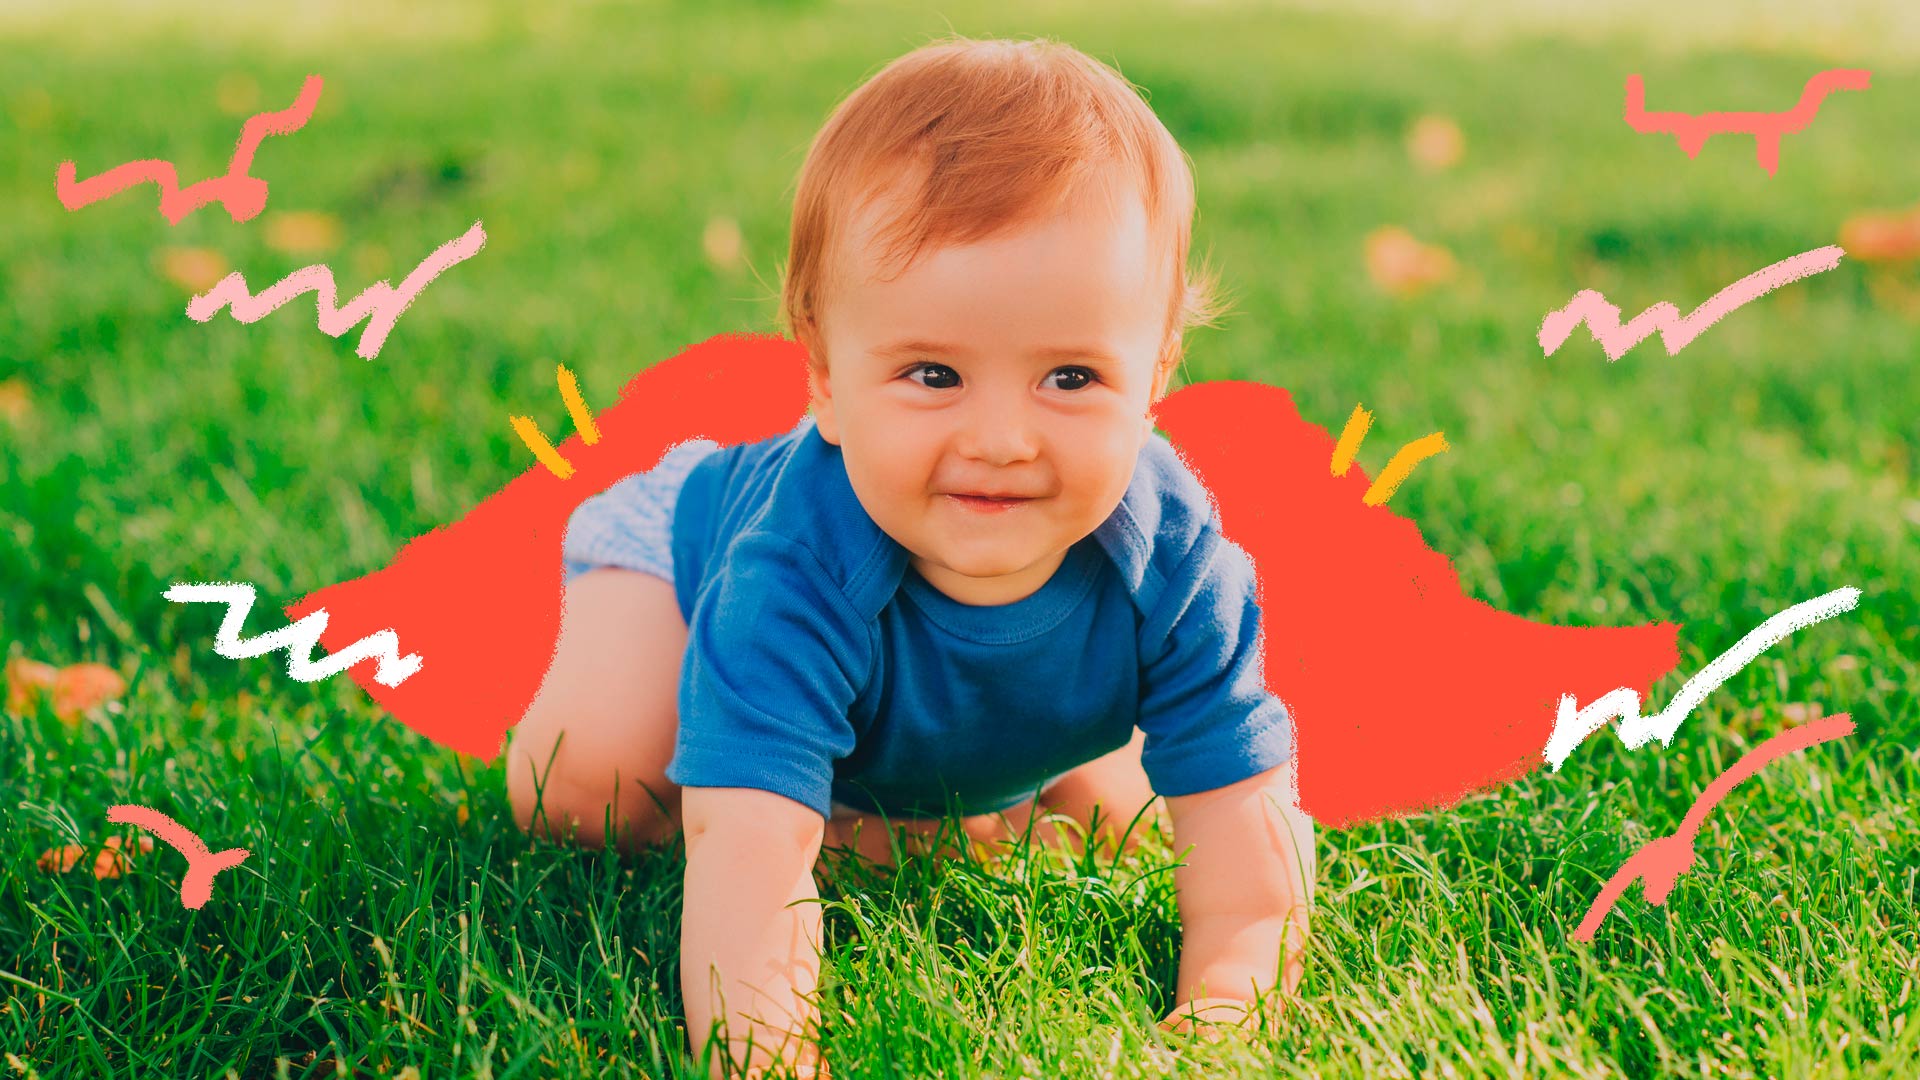 Engatinhar: foto de um bebê loiro, que veste roupas em tons azulados, está engatinhando num gramado e sorri.